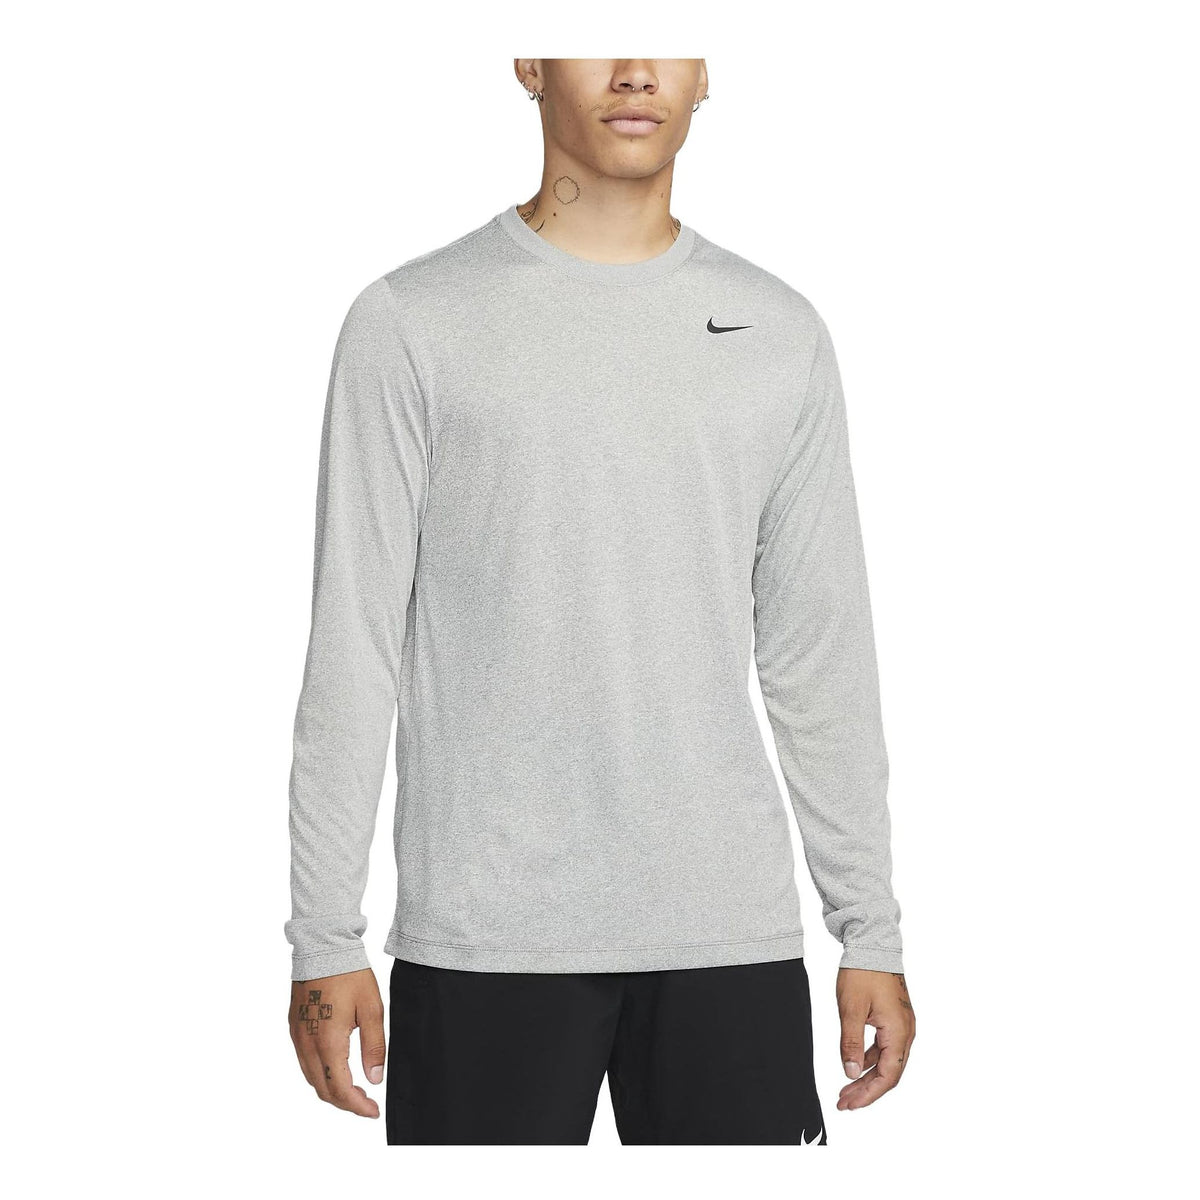 Nike Dri-FIT Legend Long-Sleeve Fitness Top 'Grey' DX0993-063 - KICKS CREW